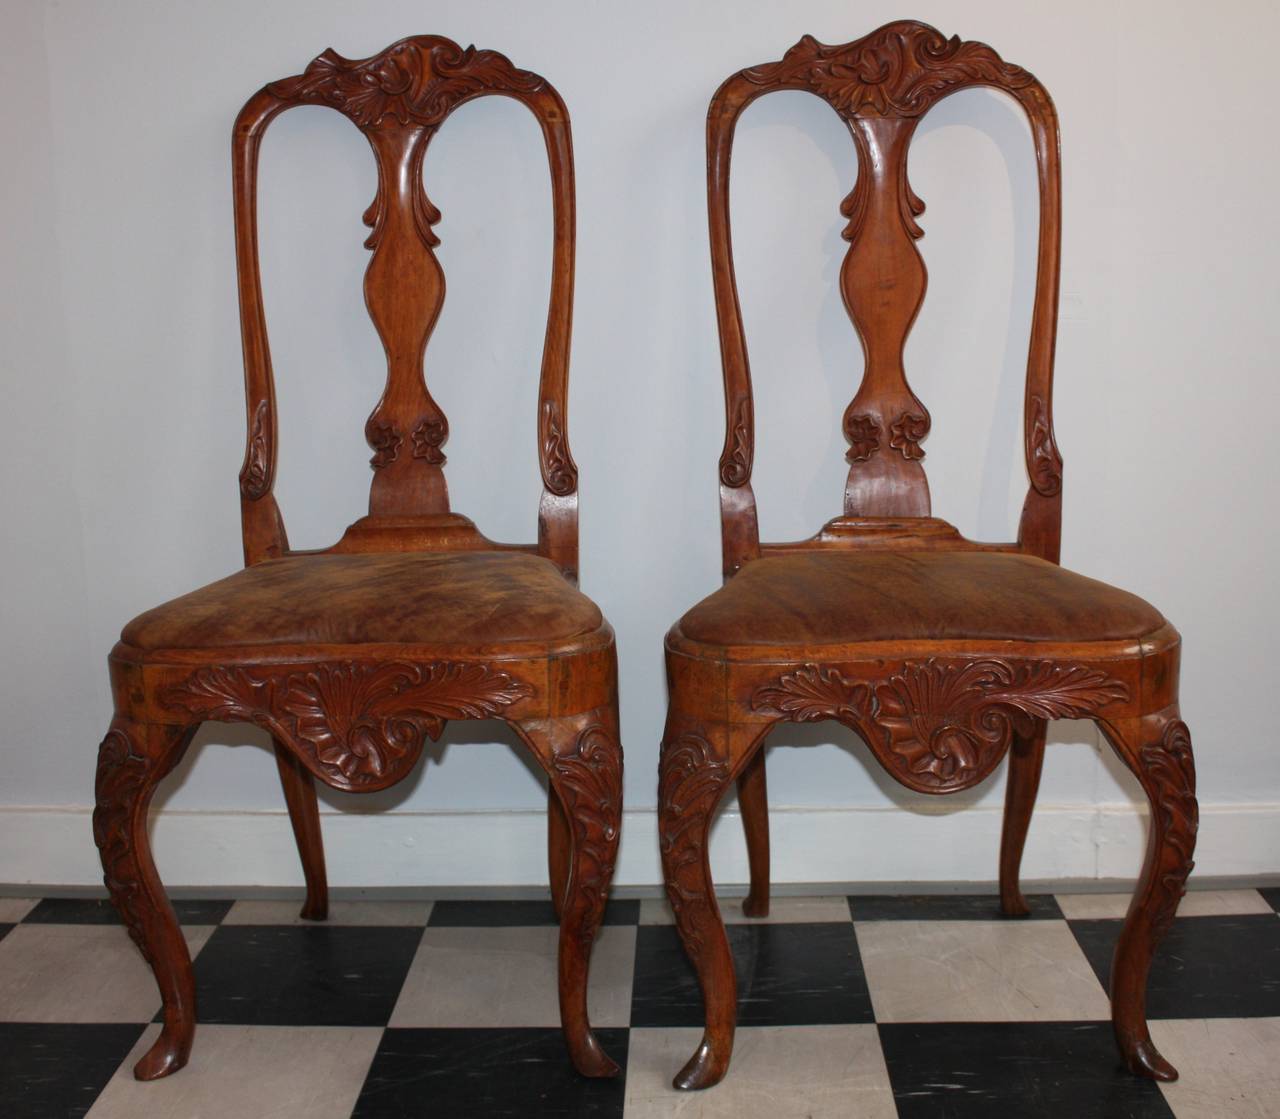 Très belle paire de chaises Rococo, nouvellement tapissées en cuir avec un look vintage. Peut être acheté avec une autre paire de chaises Rococo de la même couleur de bois et de cuir, juste un peu différente dans la sculpture. Sont présentés sur ce